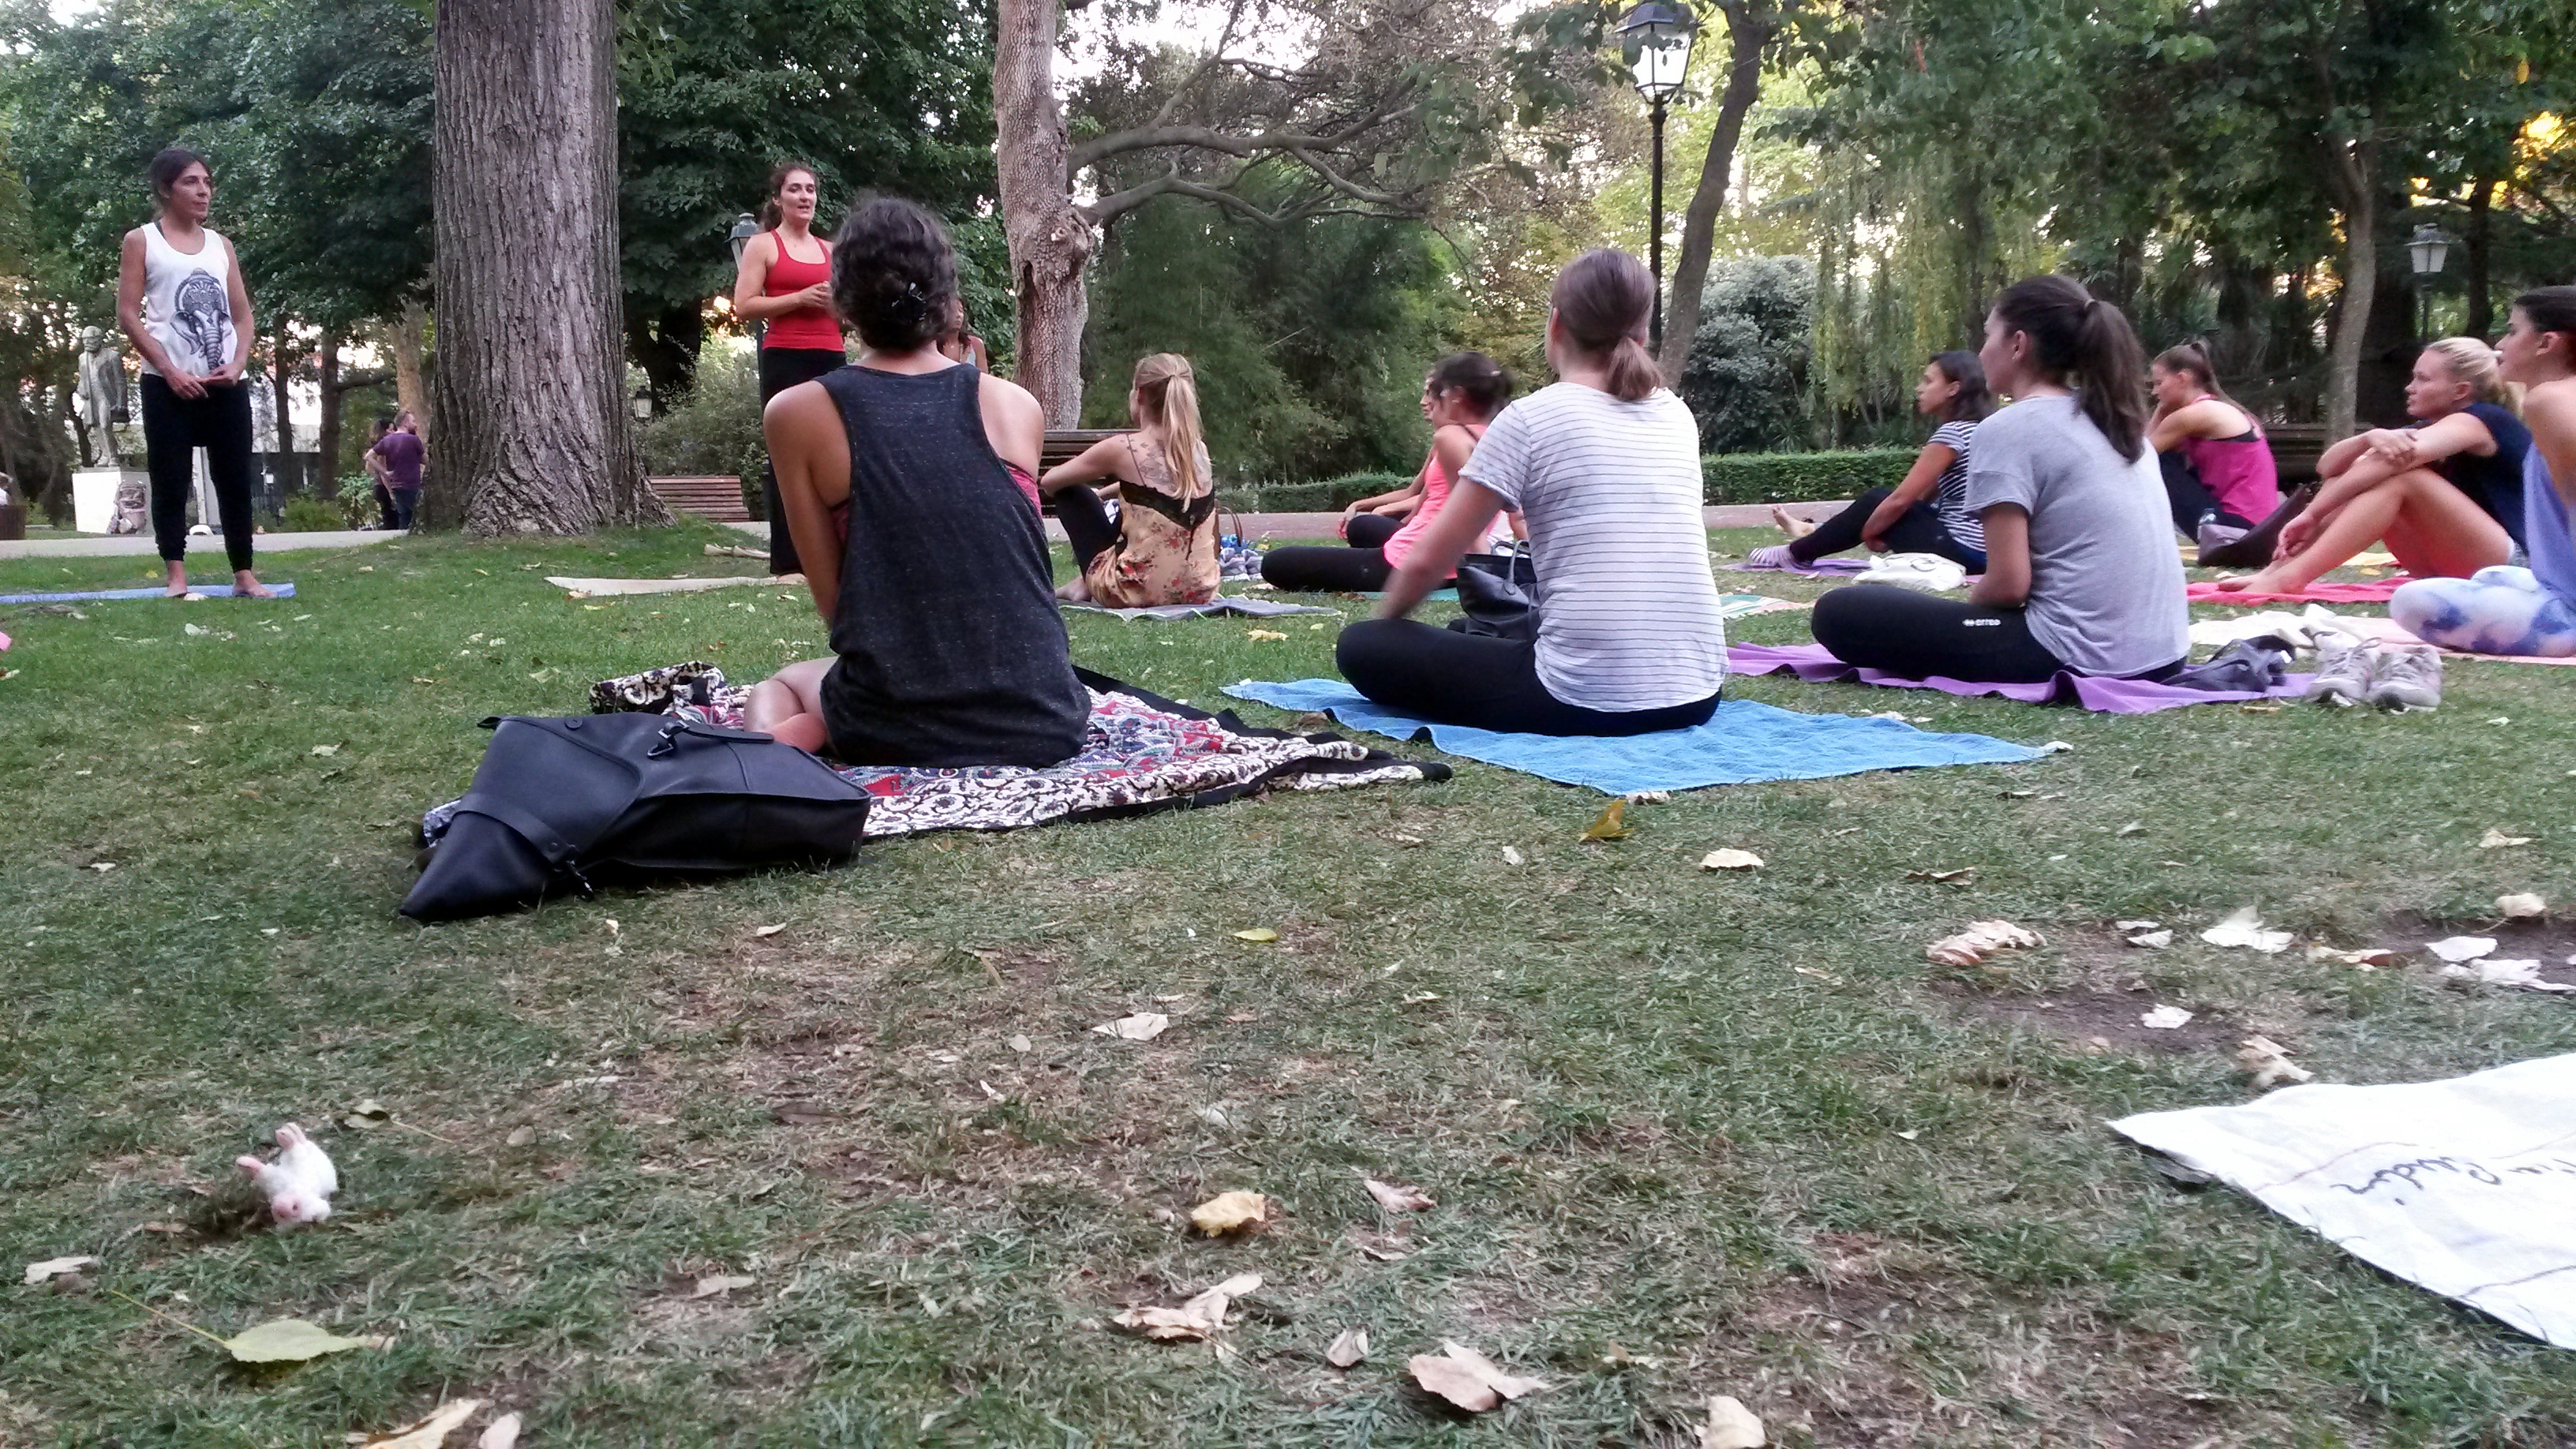 Ingyenes jóga a parkban